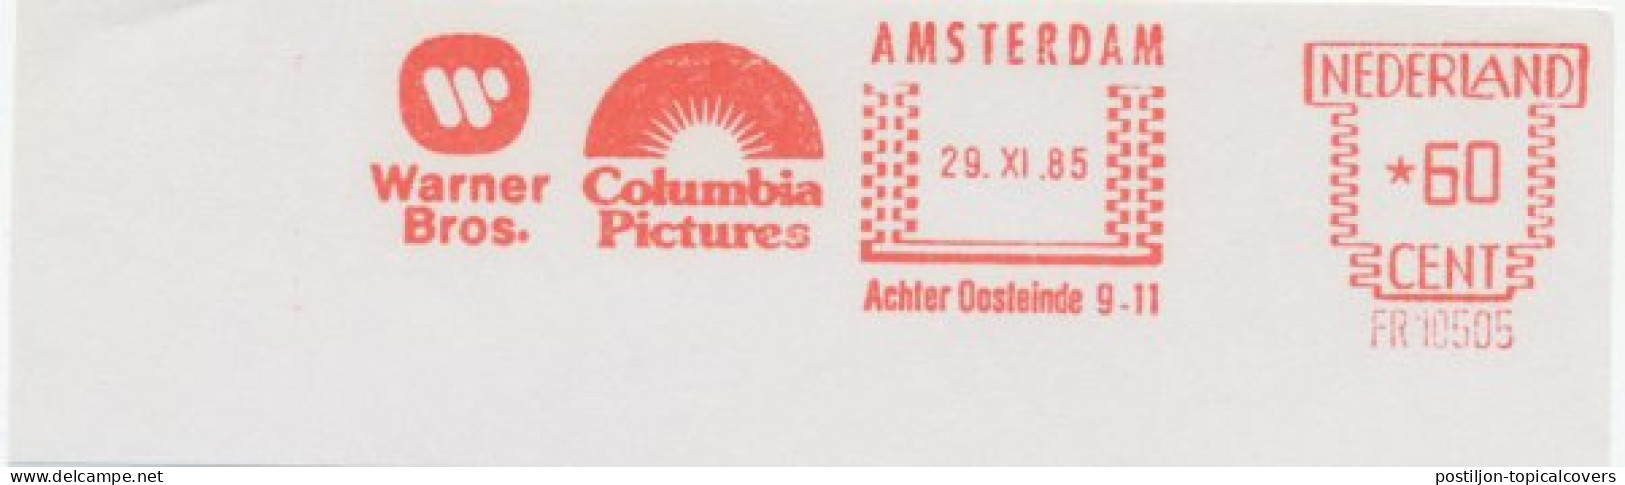 Meter Cut Netherlands 1985 Warner Bros. - Columbia Pictures - Cinema